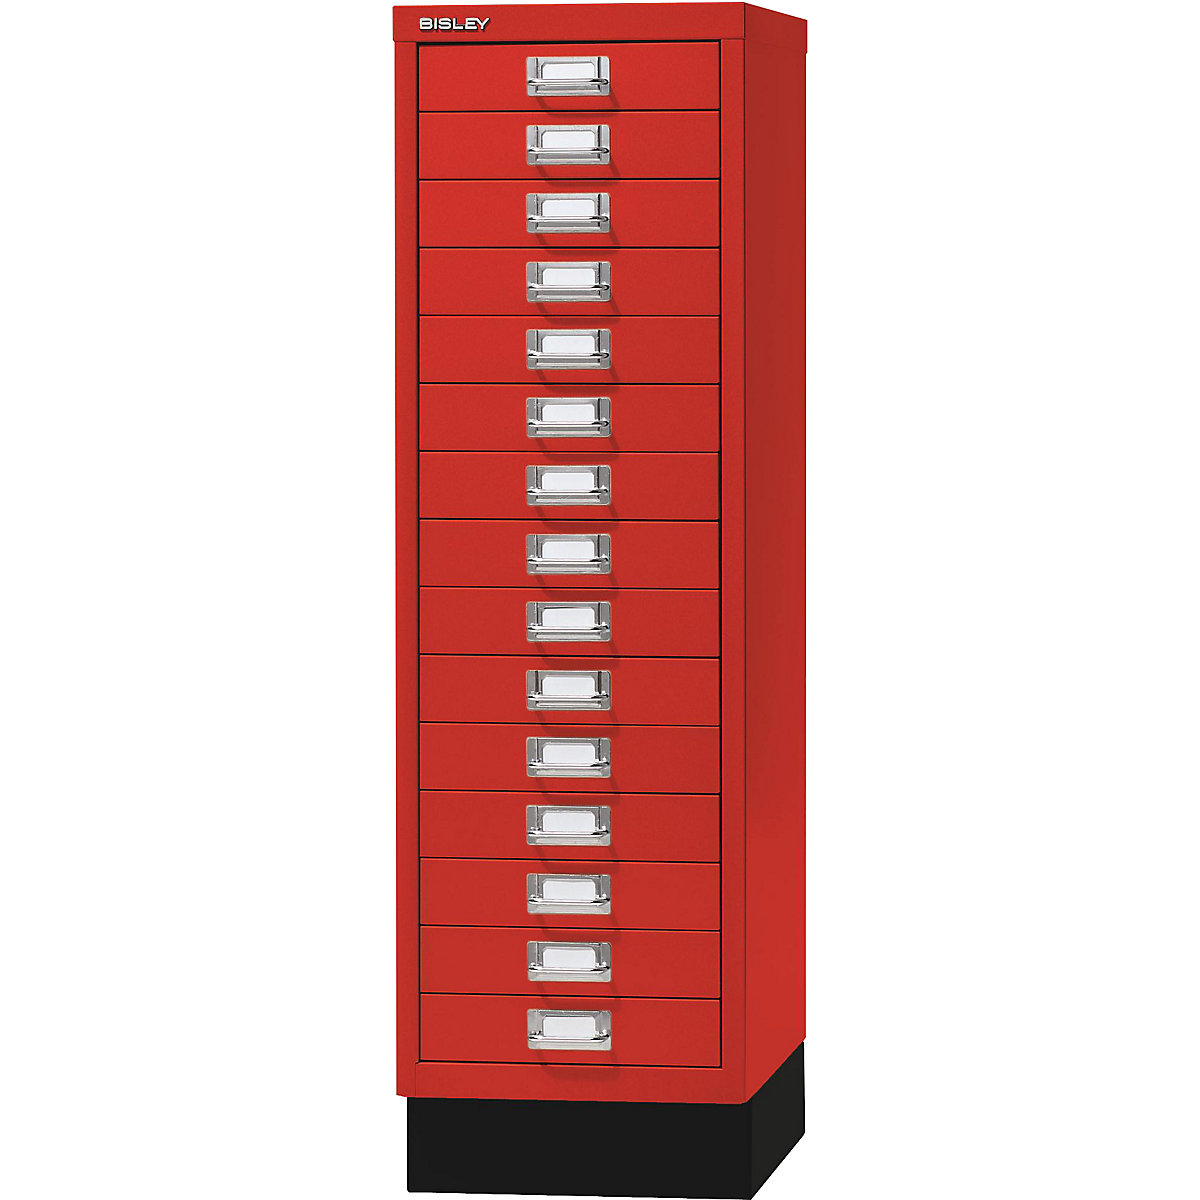 BISLEY – Serie 39 MultiDrawer™, con zócalo, DIN A4, 15 cajones, rojo cardenal, negro